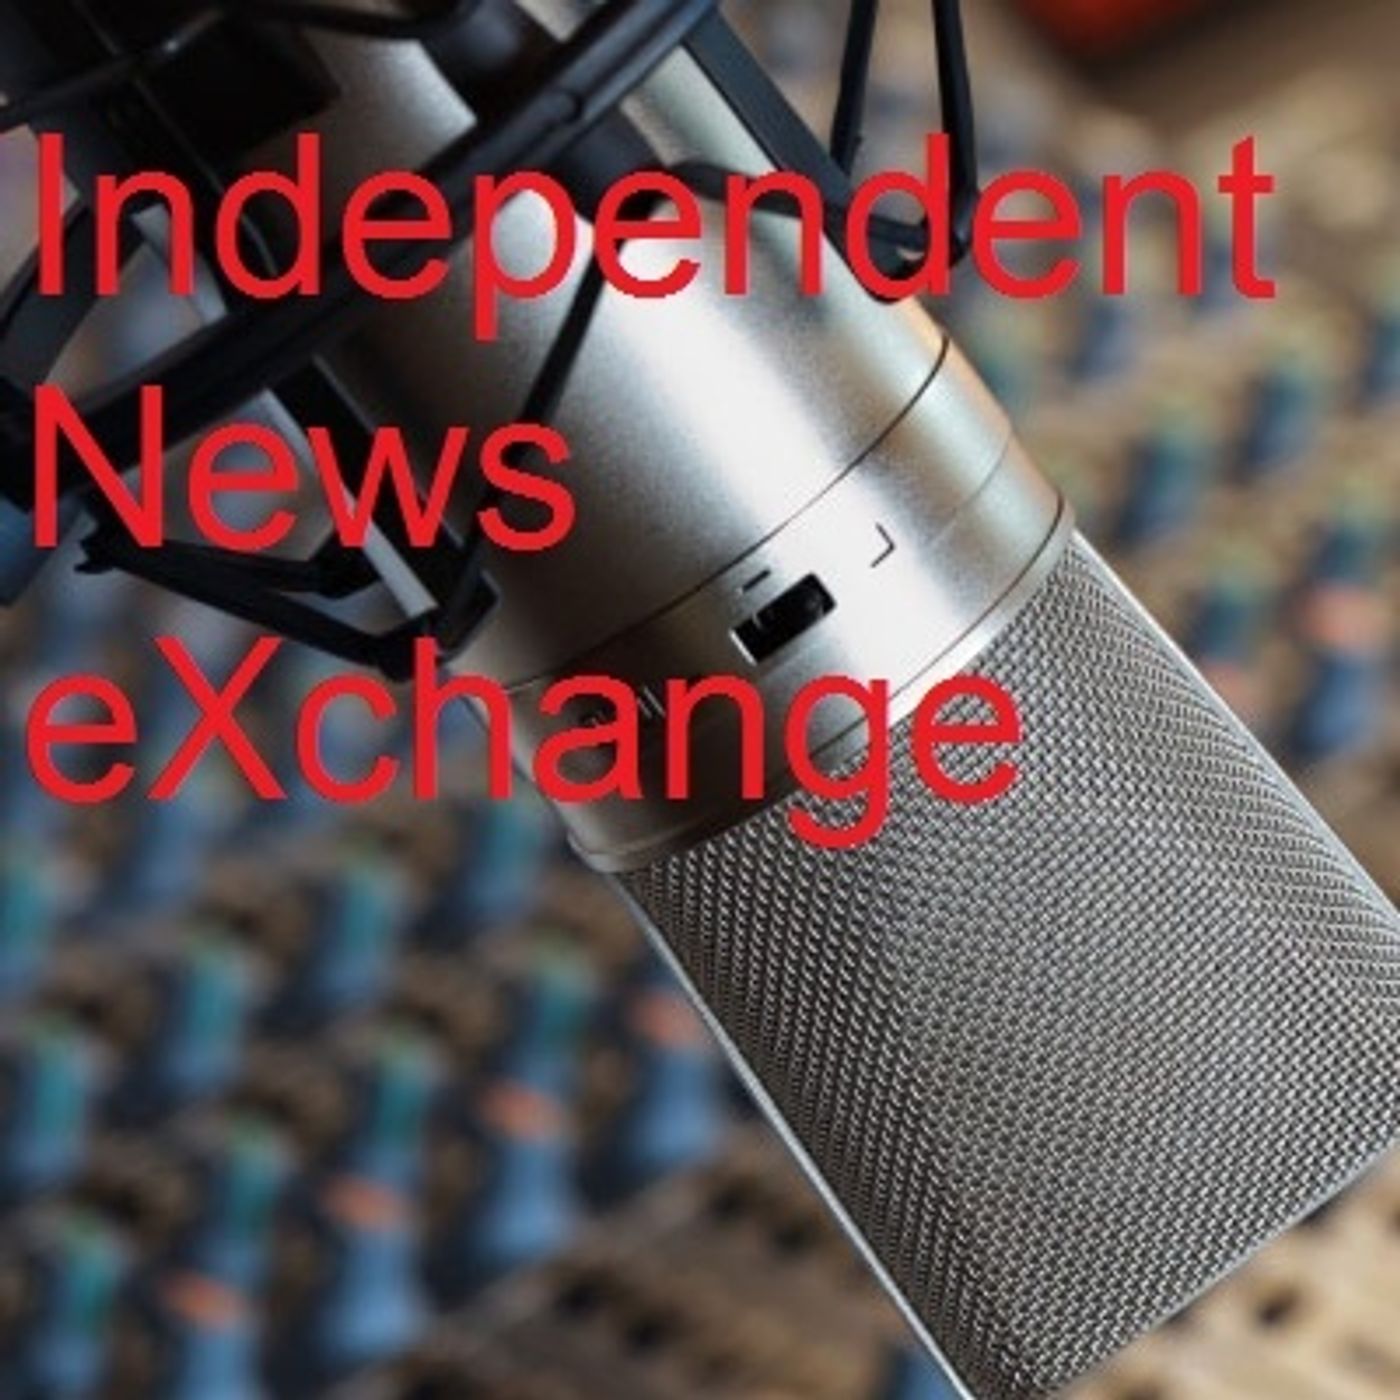 Independent News Exchange